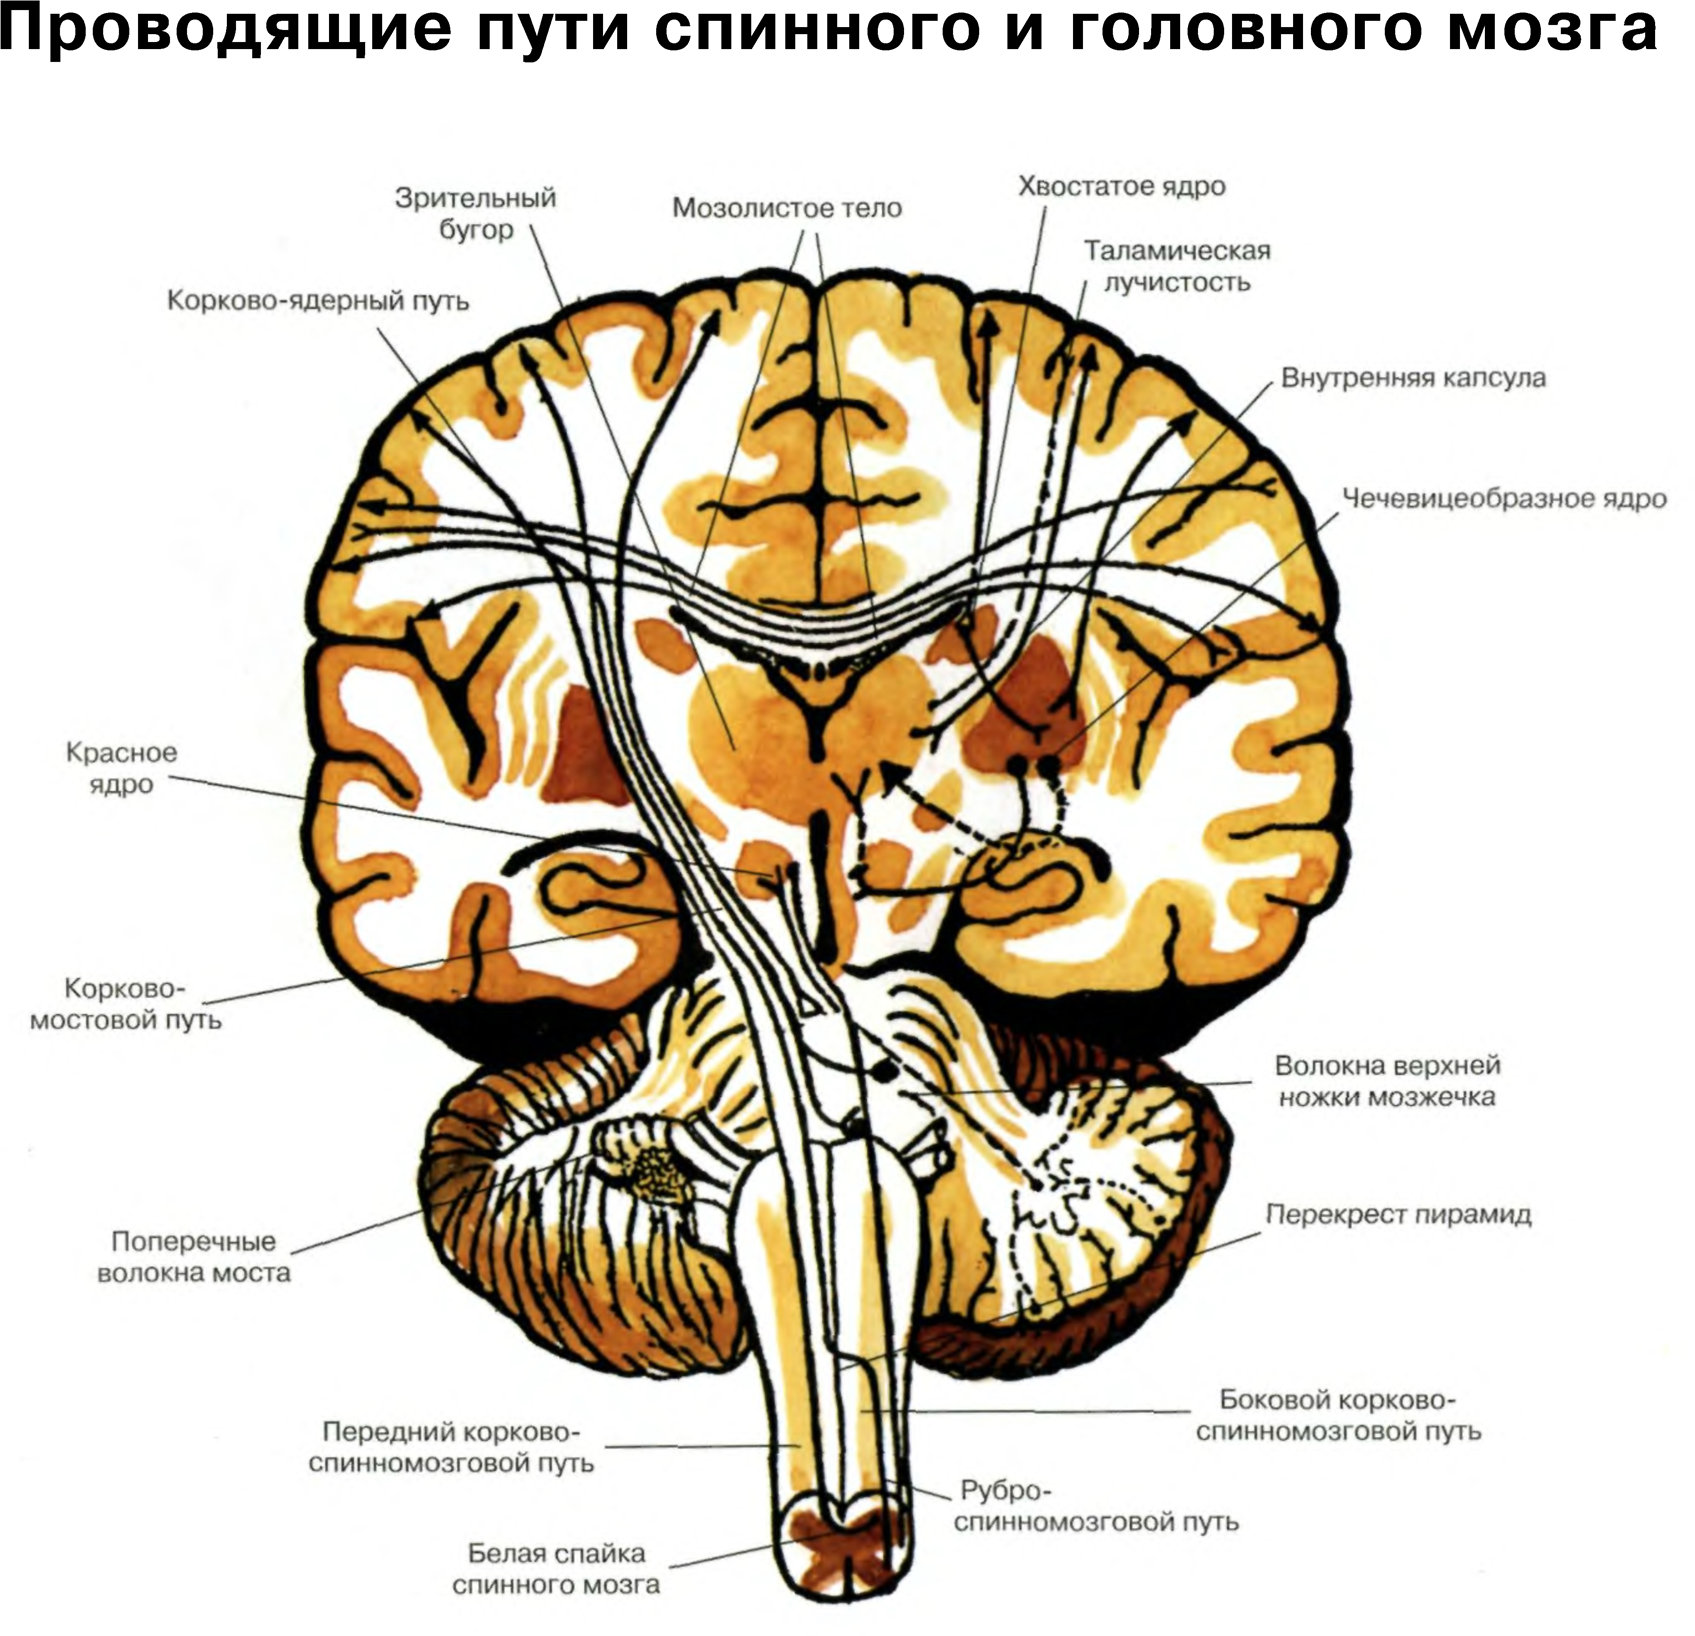 Проводящие пути спинного и головного мозга